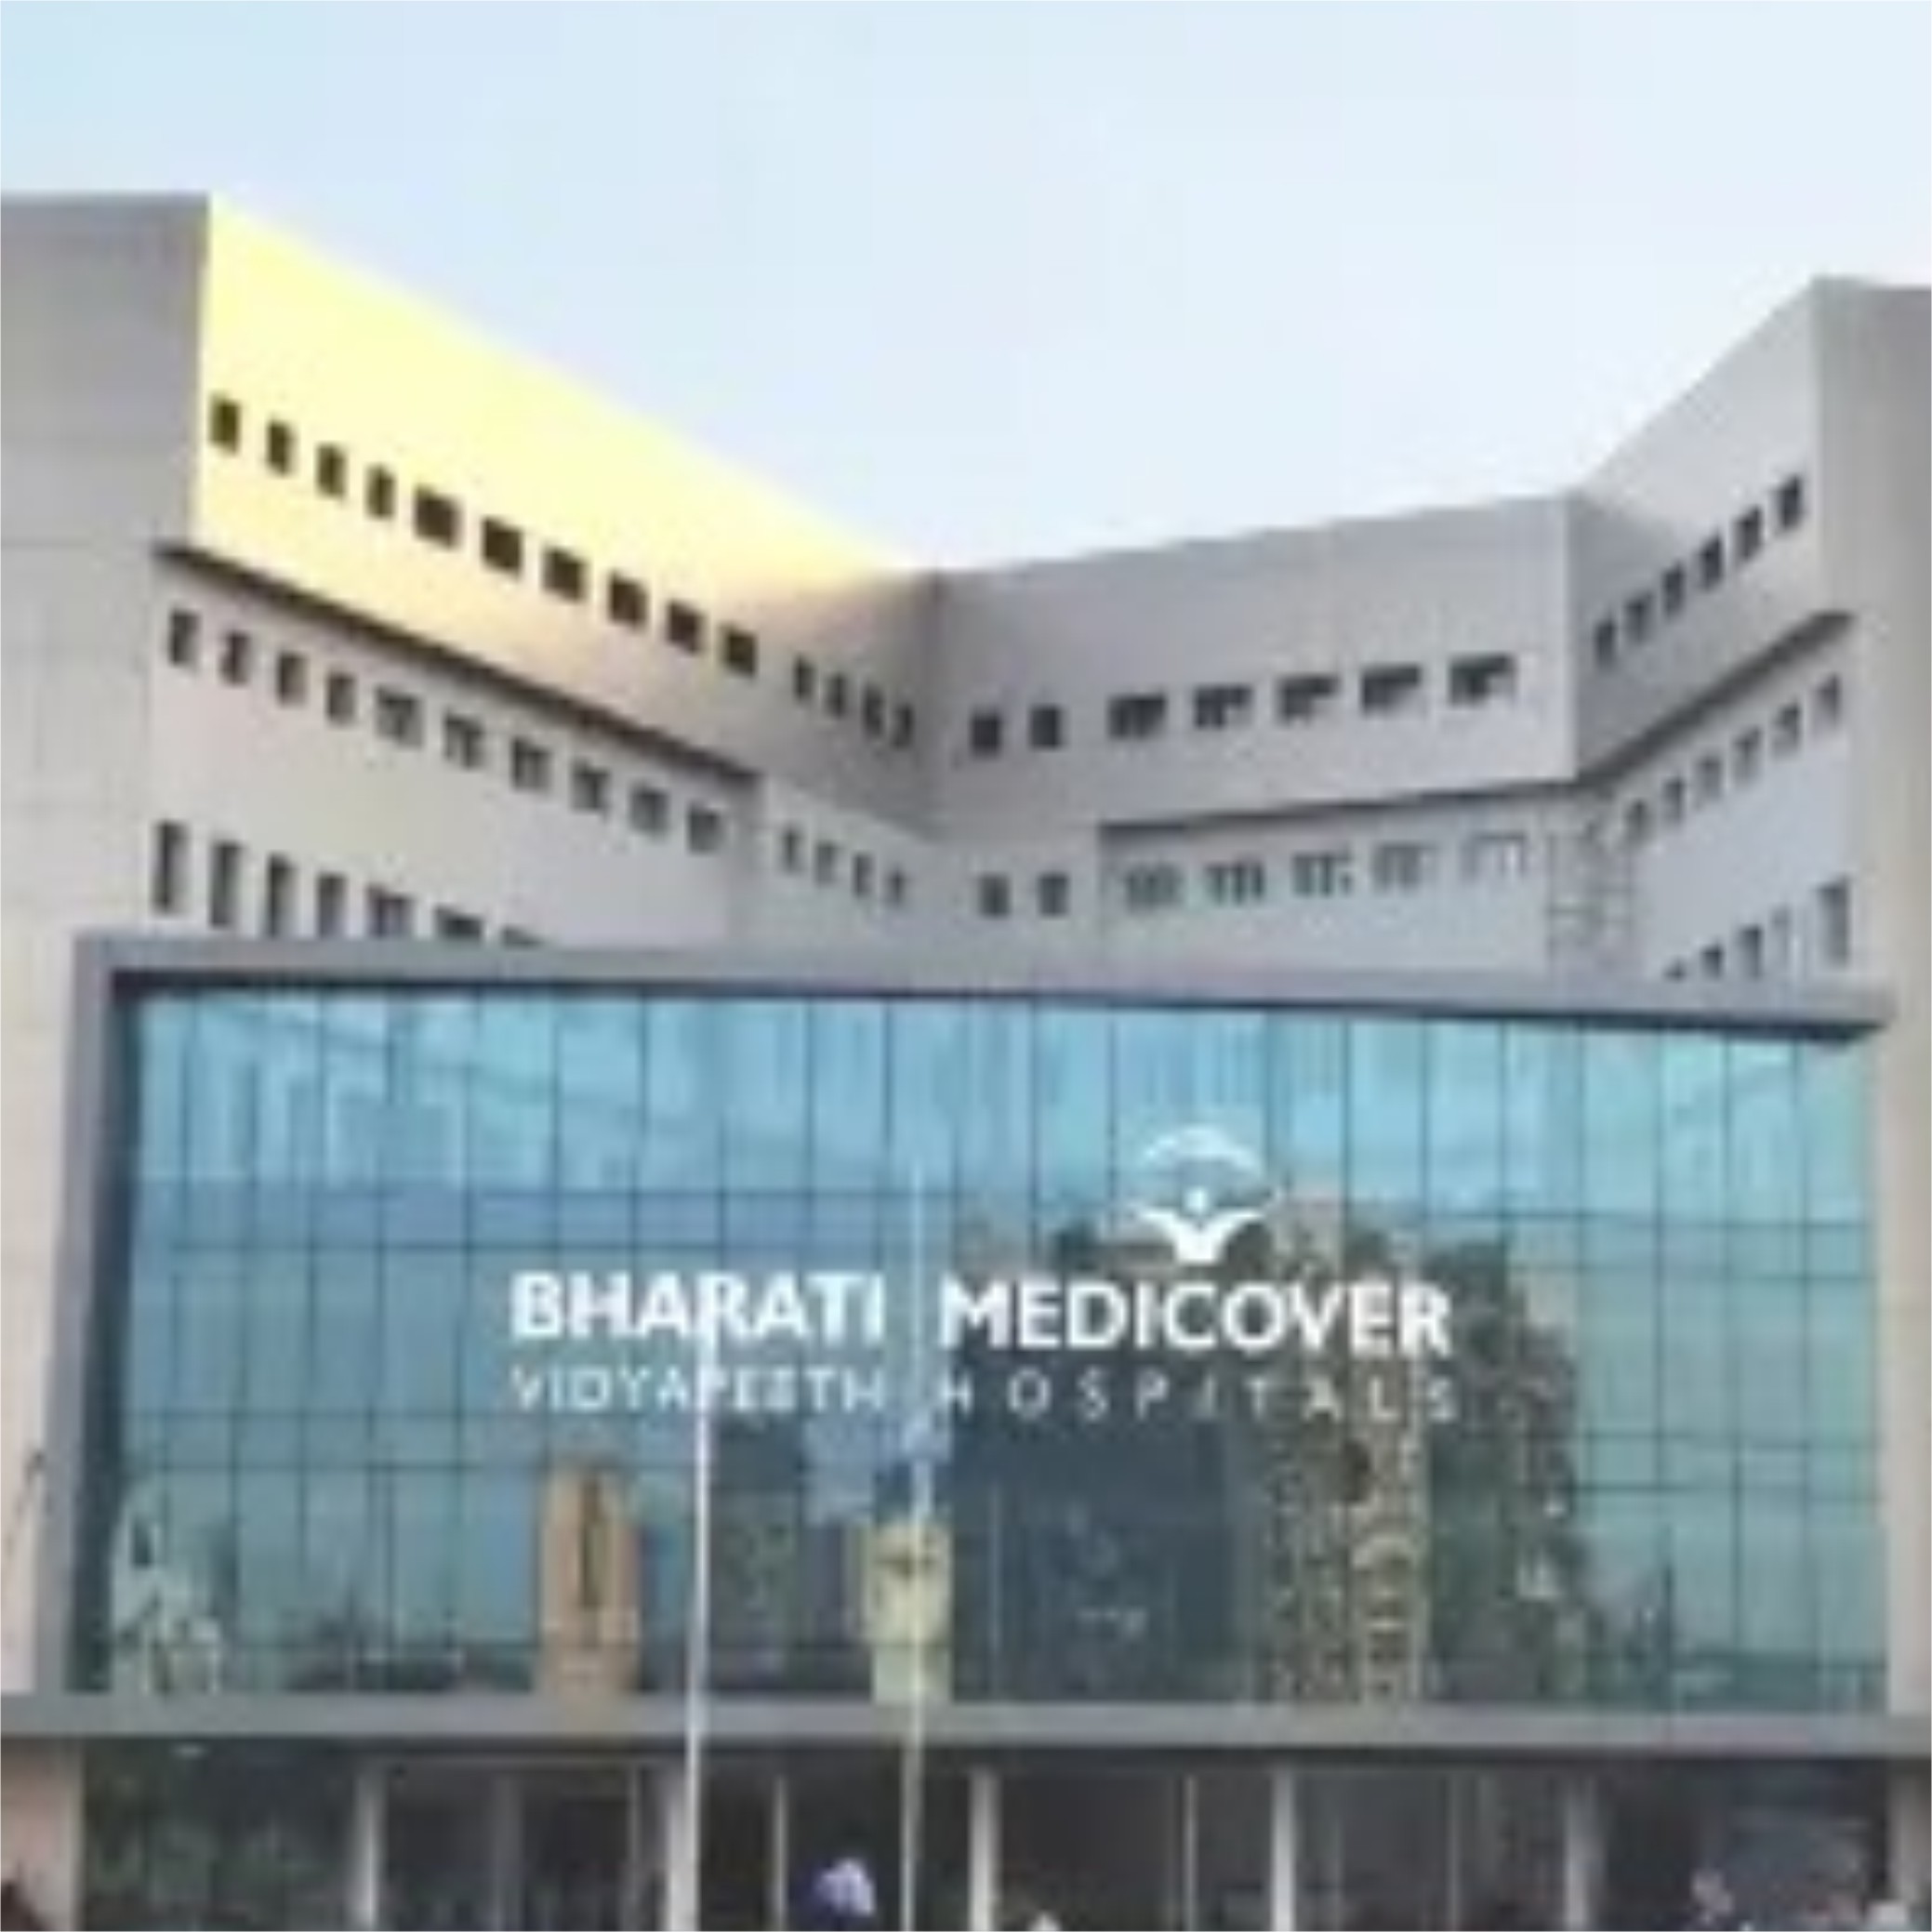 Medicover Hospital Mumbai India